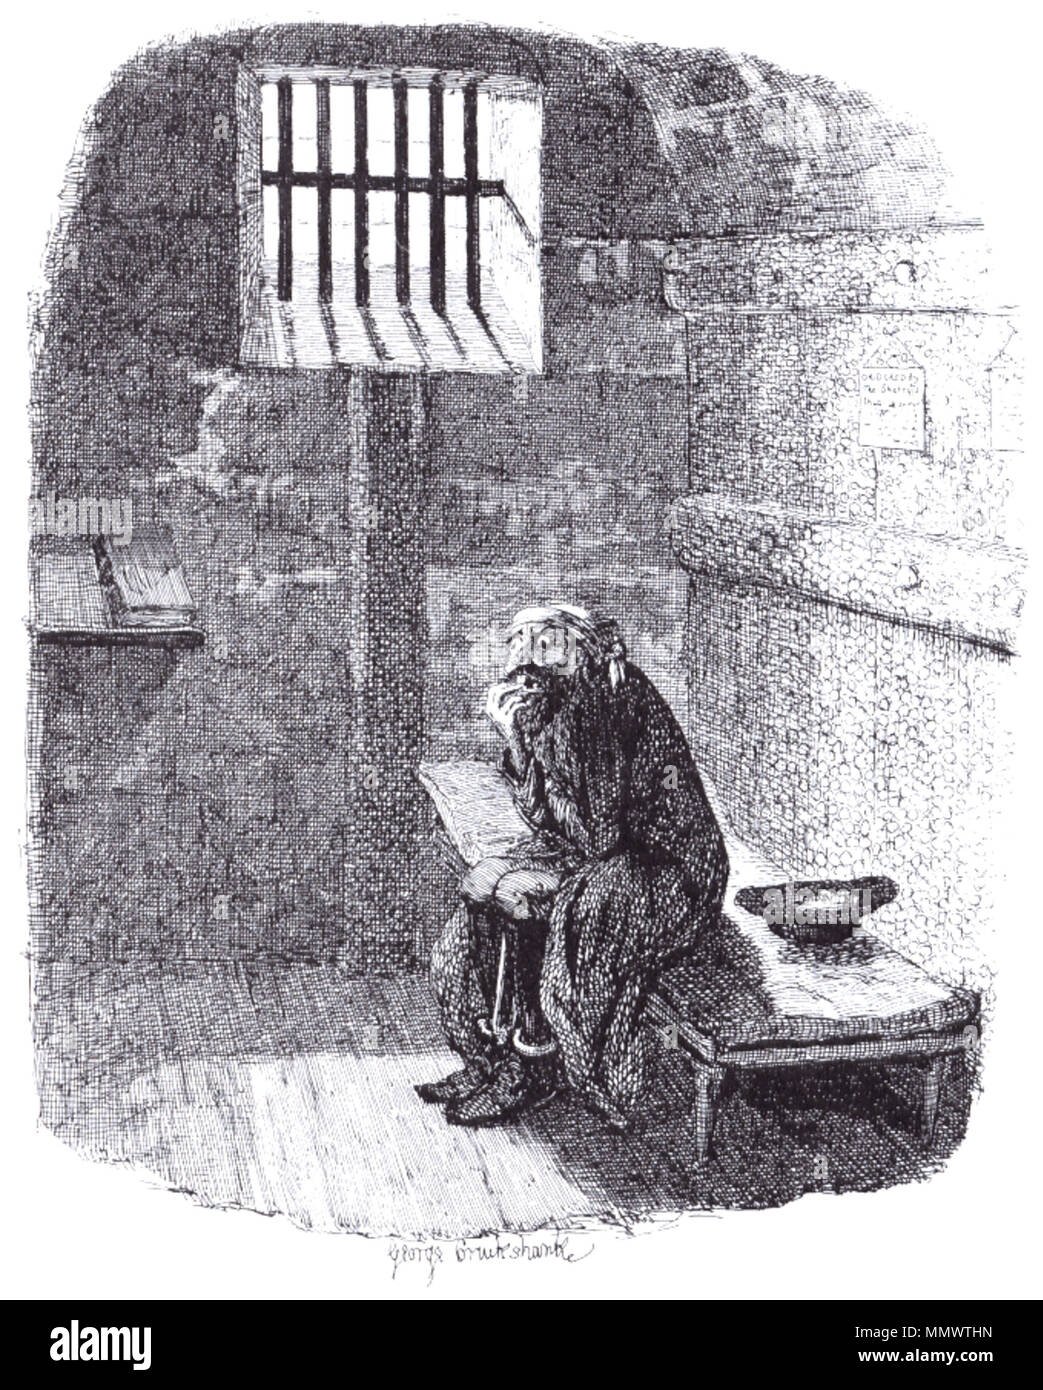 Иллюстрация к стиху Пушкина узник